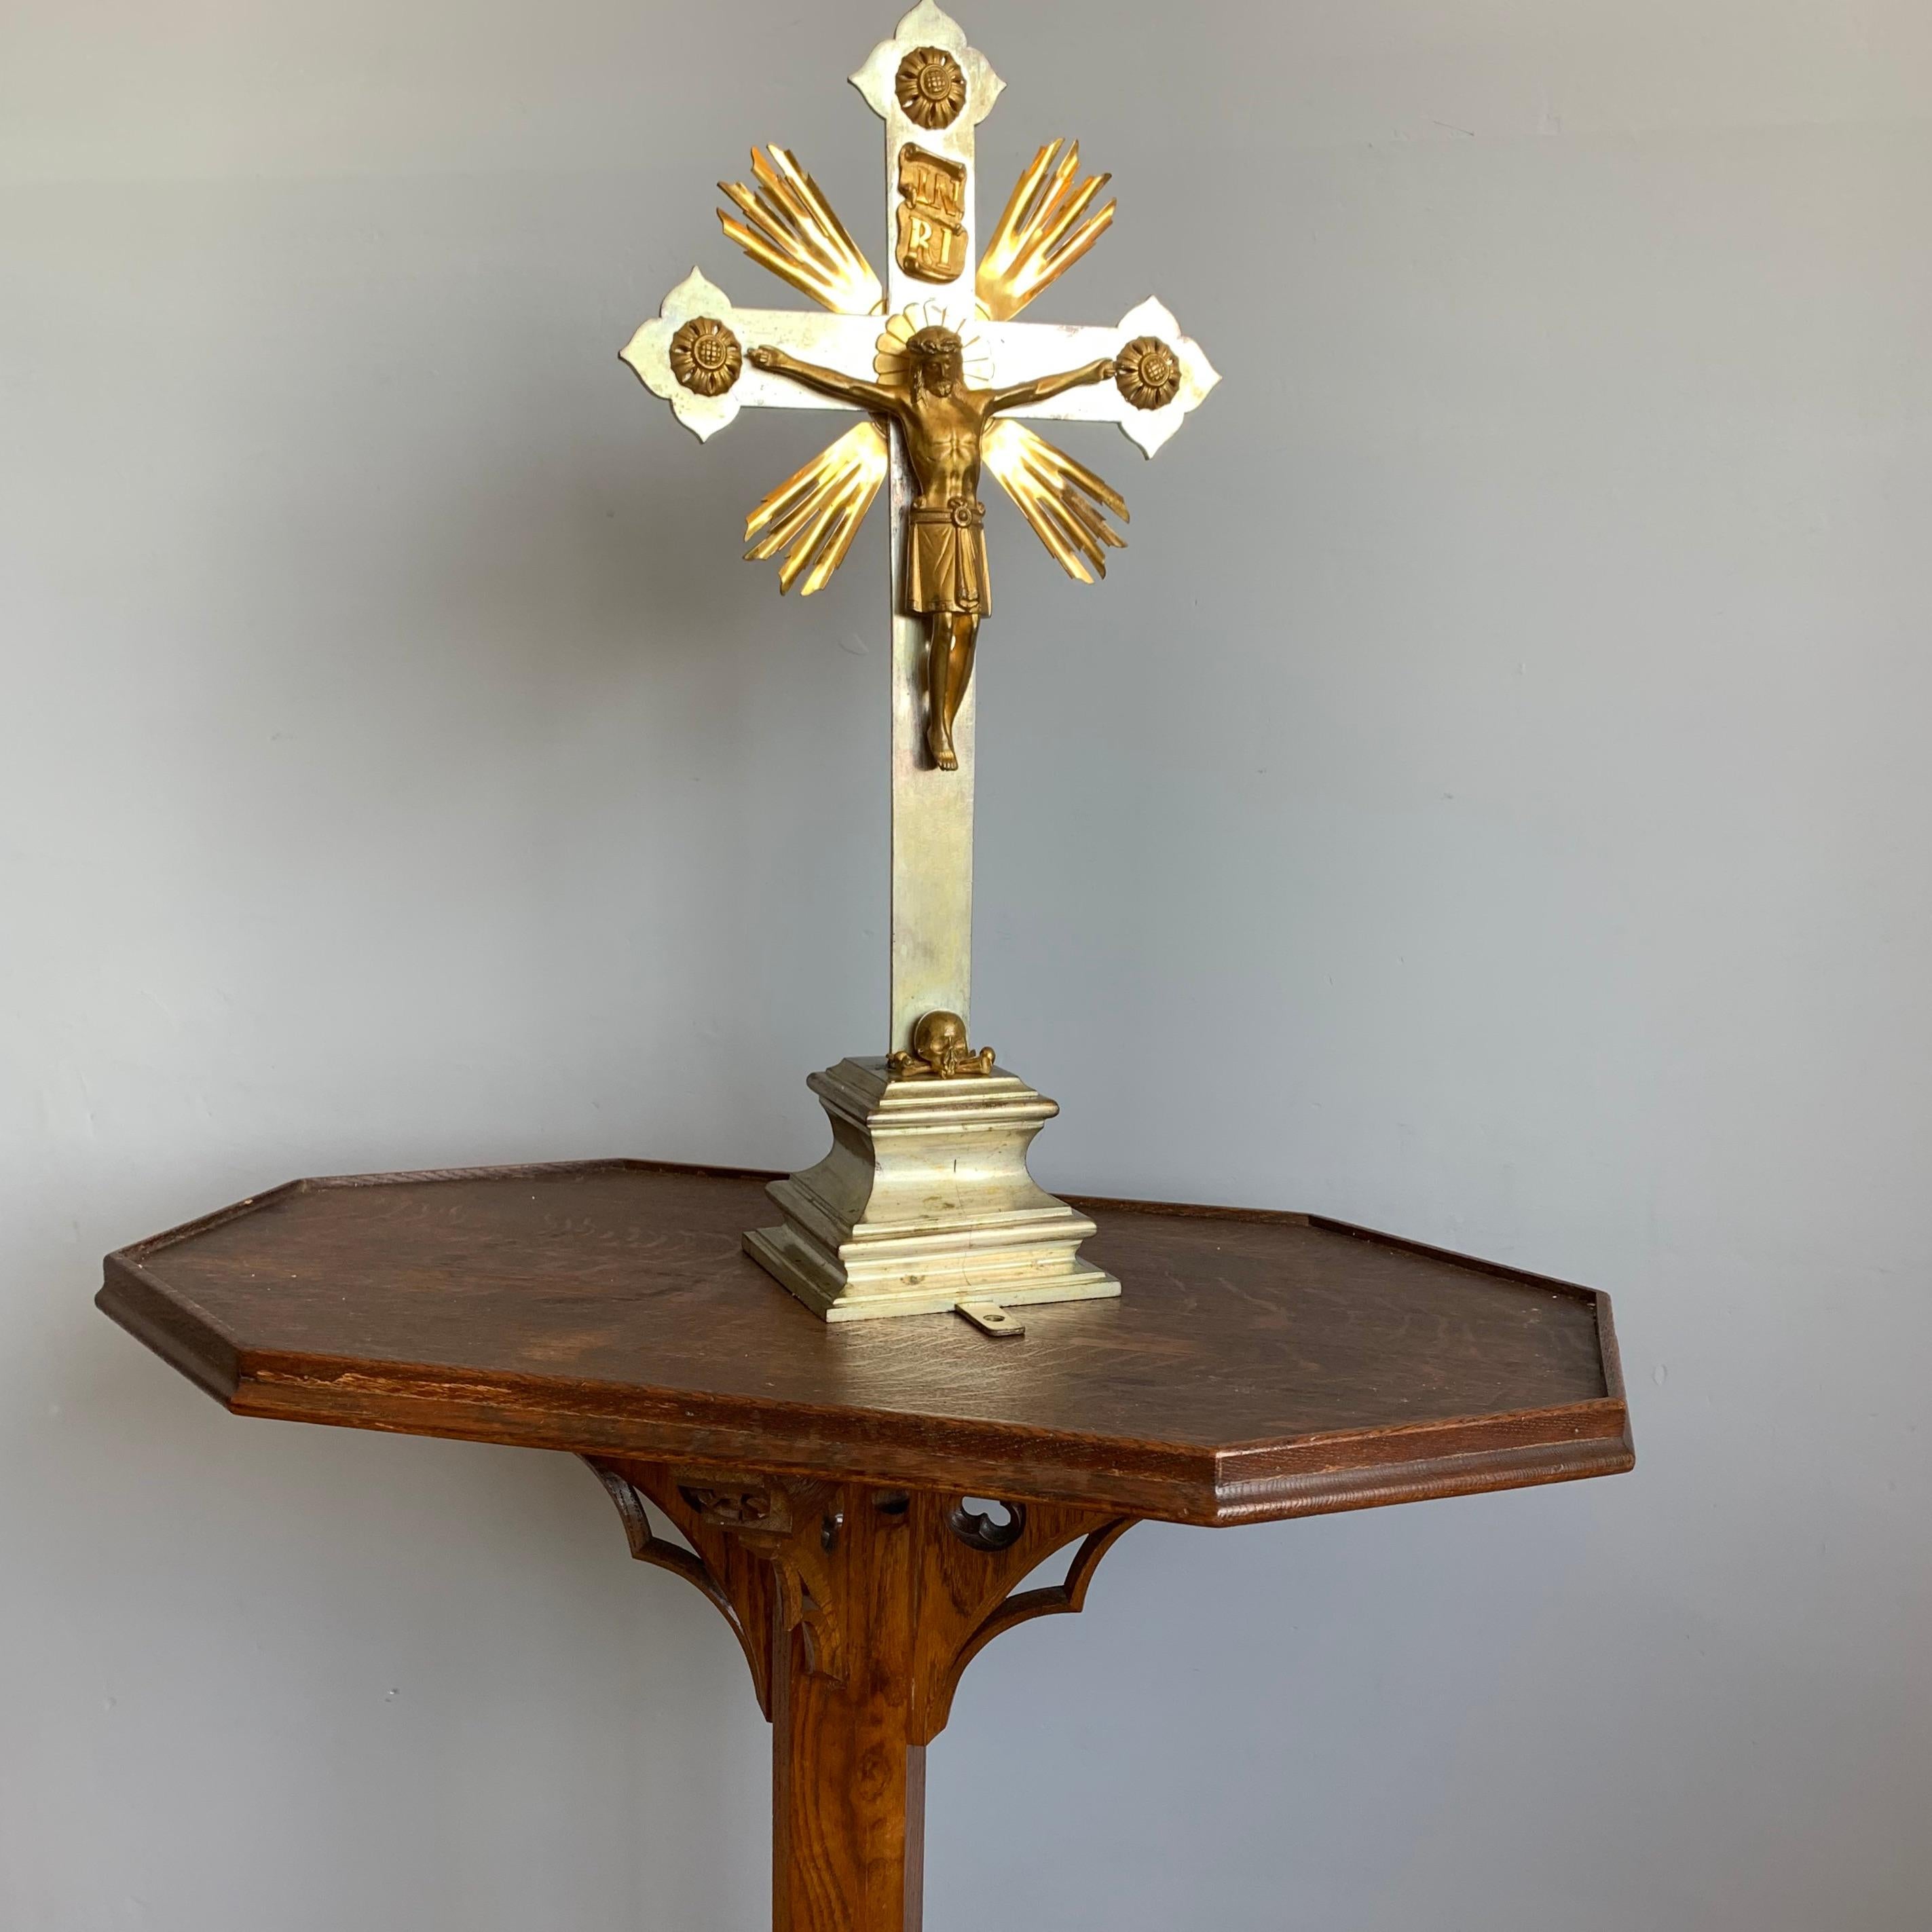 Crucifix d'autel d'église gothique de bonne taille et de facture impressionnante.

Ce crucifix de table en bronze, orné et entièrement fabriqué à la main, est accompagné d'un corps du Christ en bronze doré de bonne qualité et finement détaillé.